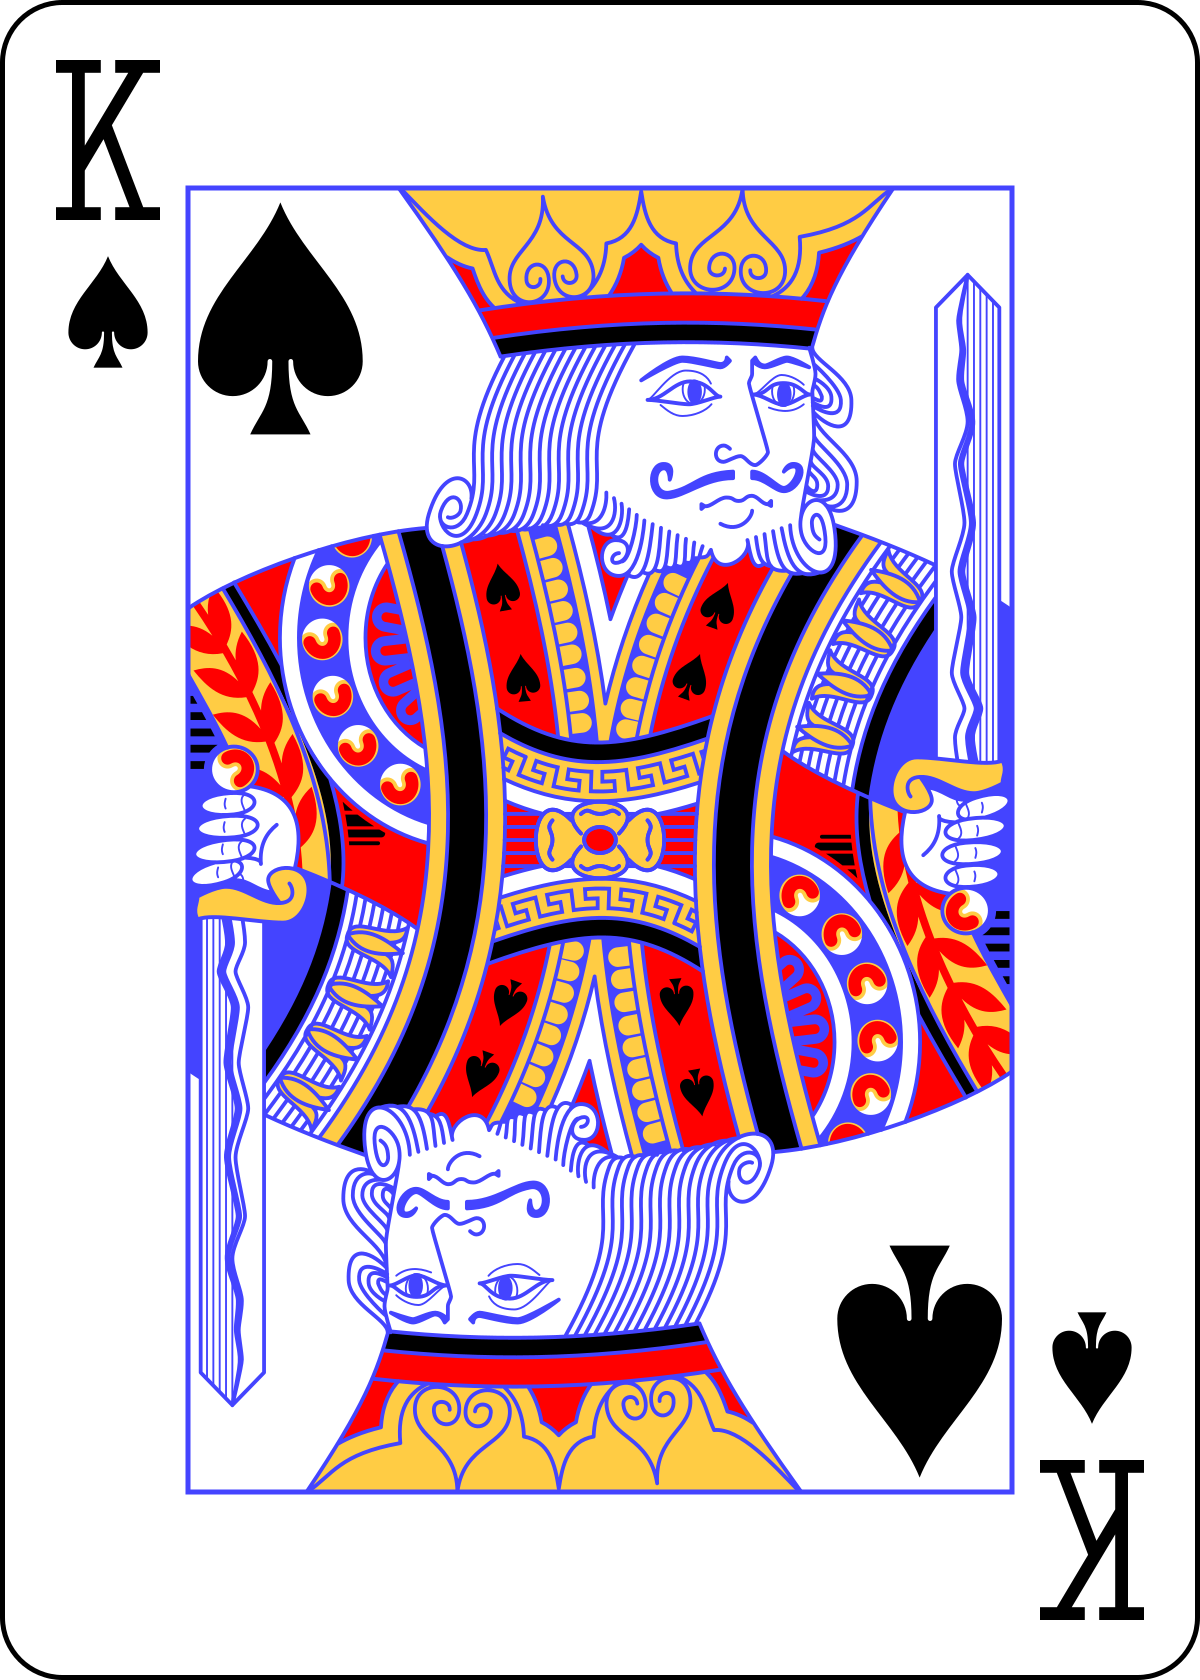 Playing card - Wikipedia